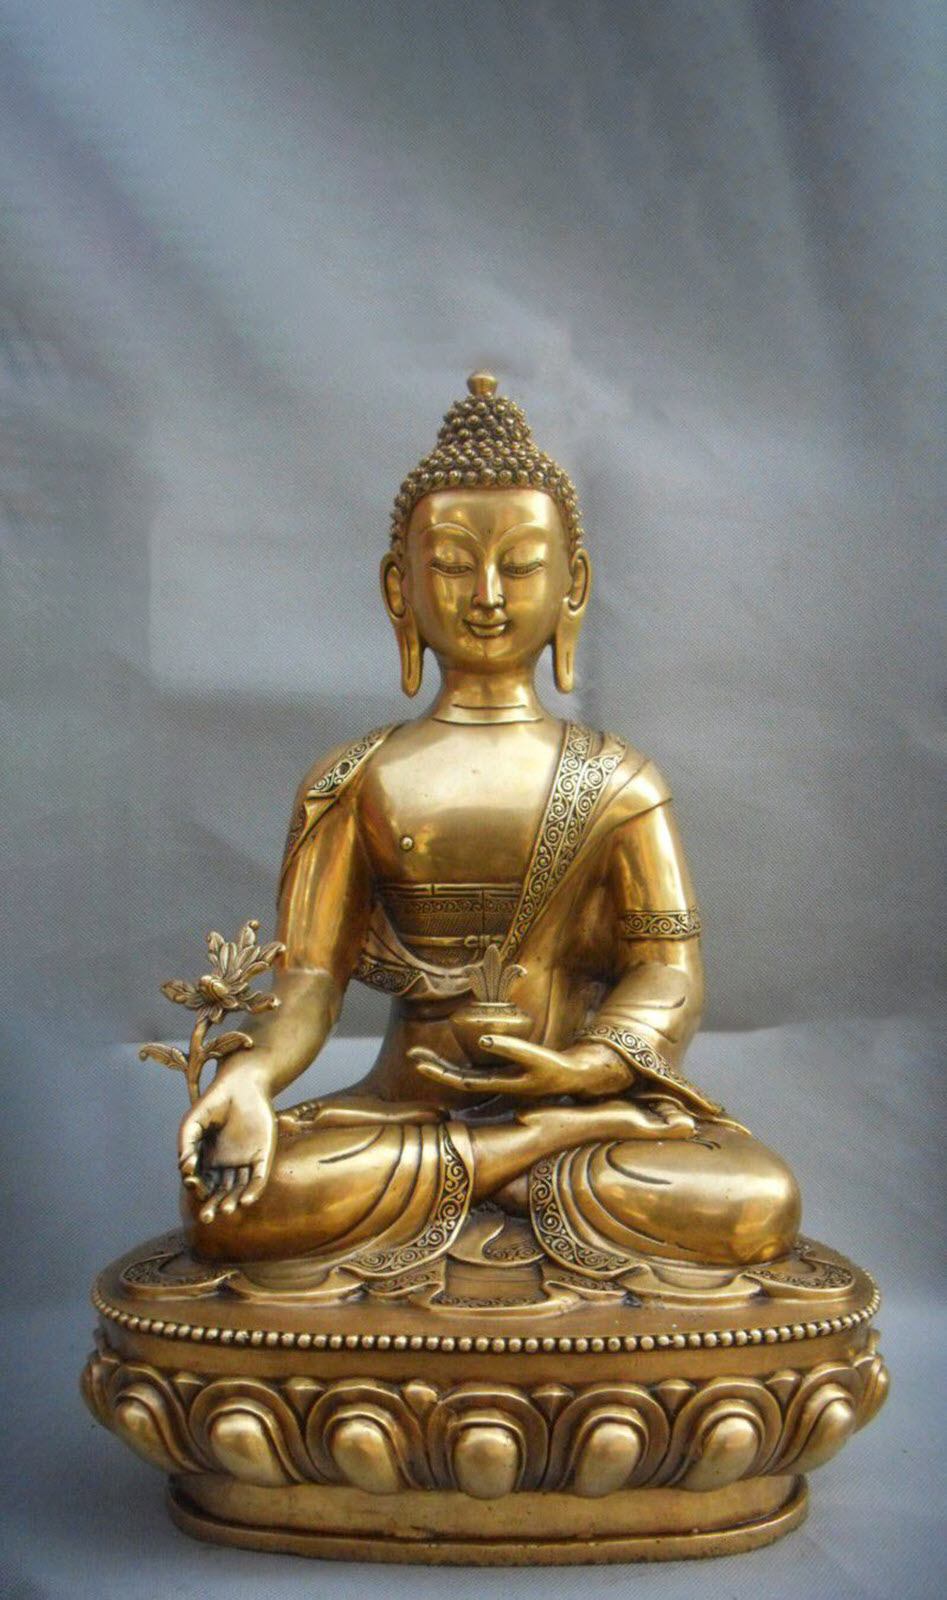 Hình nền Phật Dược Sư: Hình nền Phật Dược Sư mang đến cho ta một bầu không khí thanh tịnh và yên bình của Triết lý Phật giáo. Hãy sử dụng hình nền Phật Dược Sư trên thiết bị điện tử của bạn để giúp tinh thần của bạn luôn được tươi mới và cân bằng.